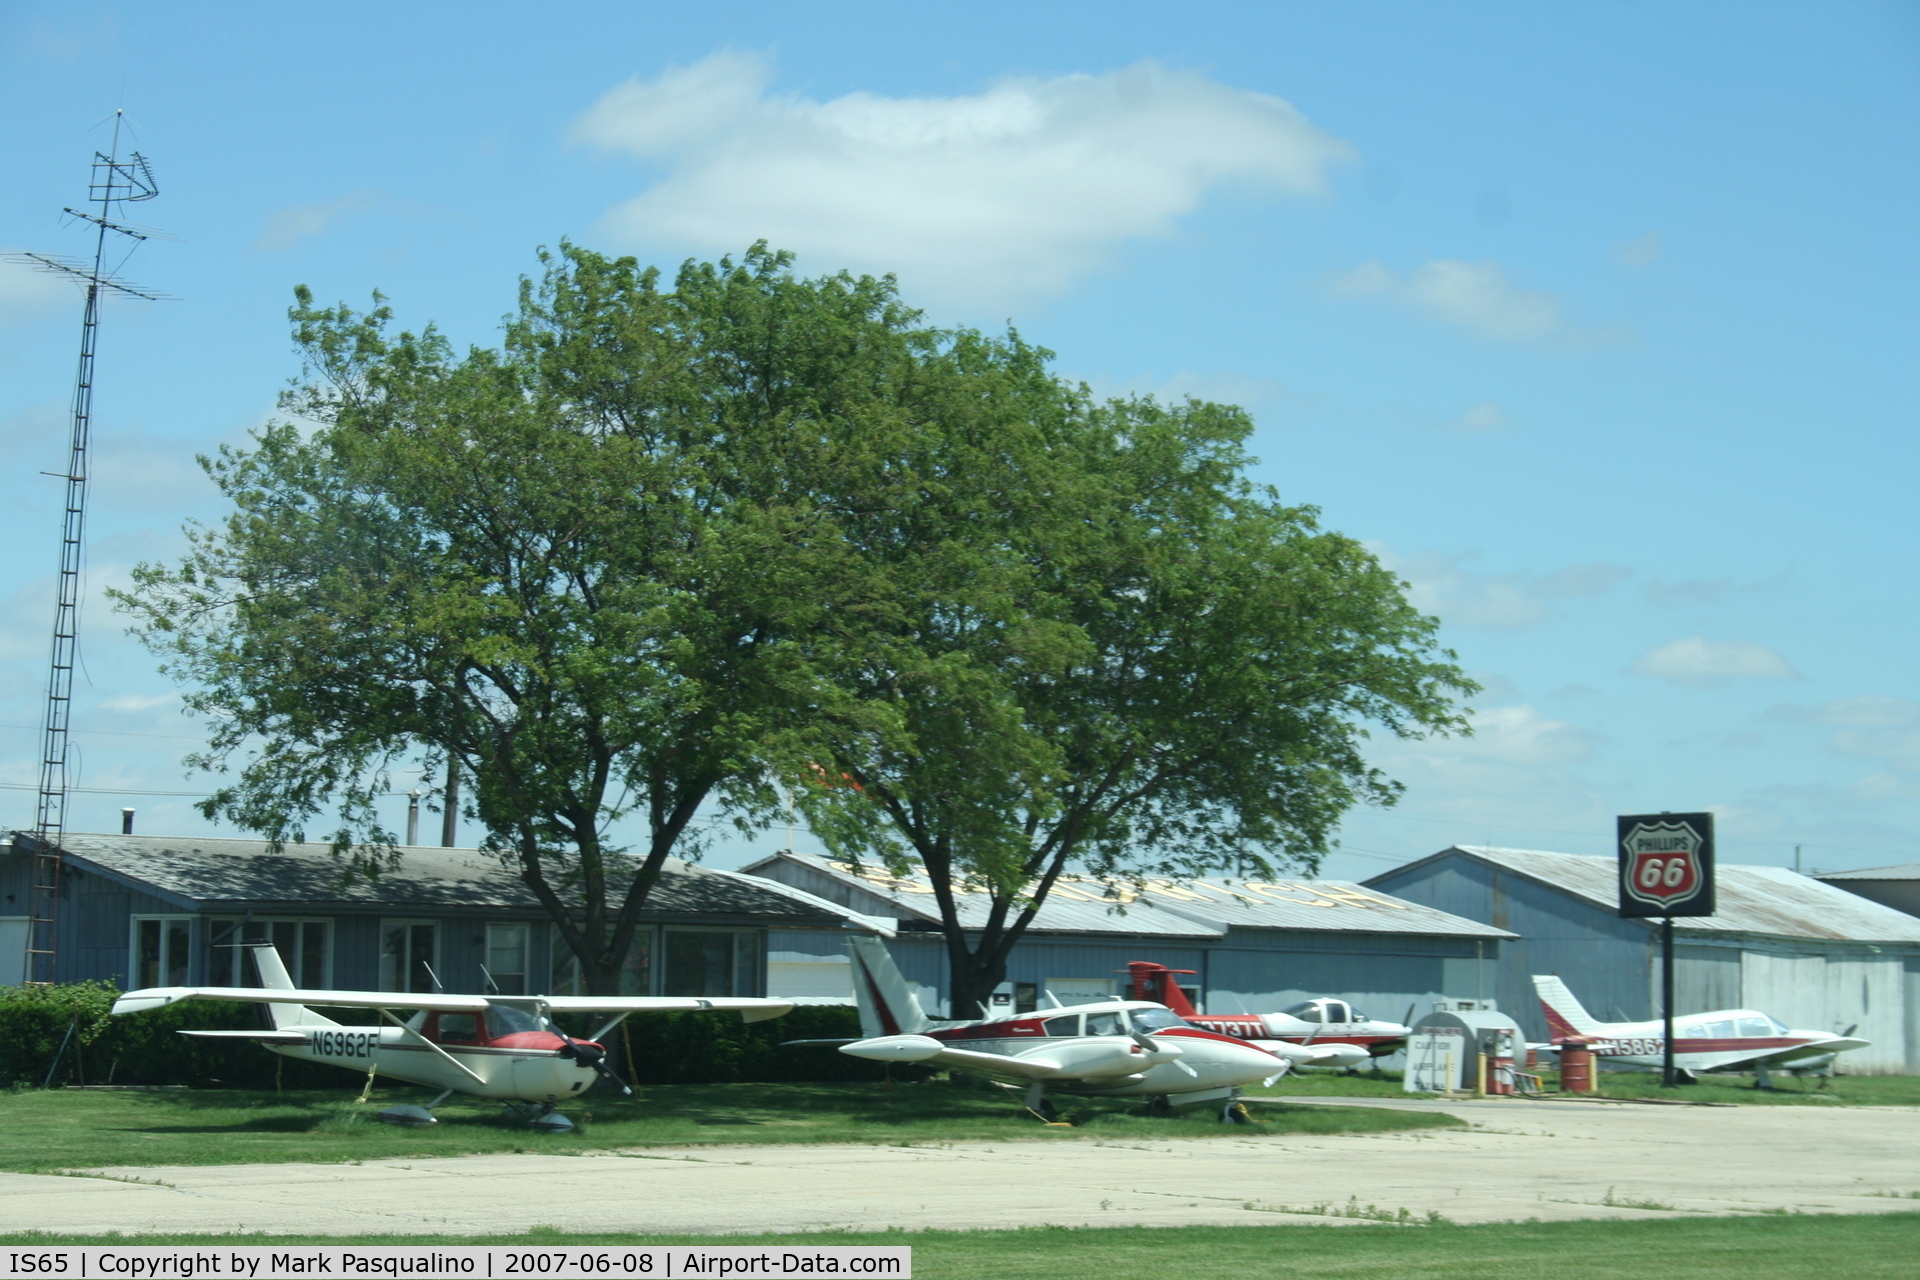 Woodlake Landing Airport (IS65) - Main Terminal